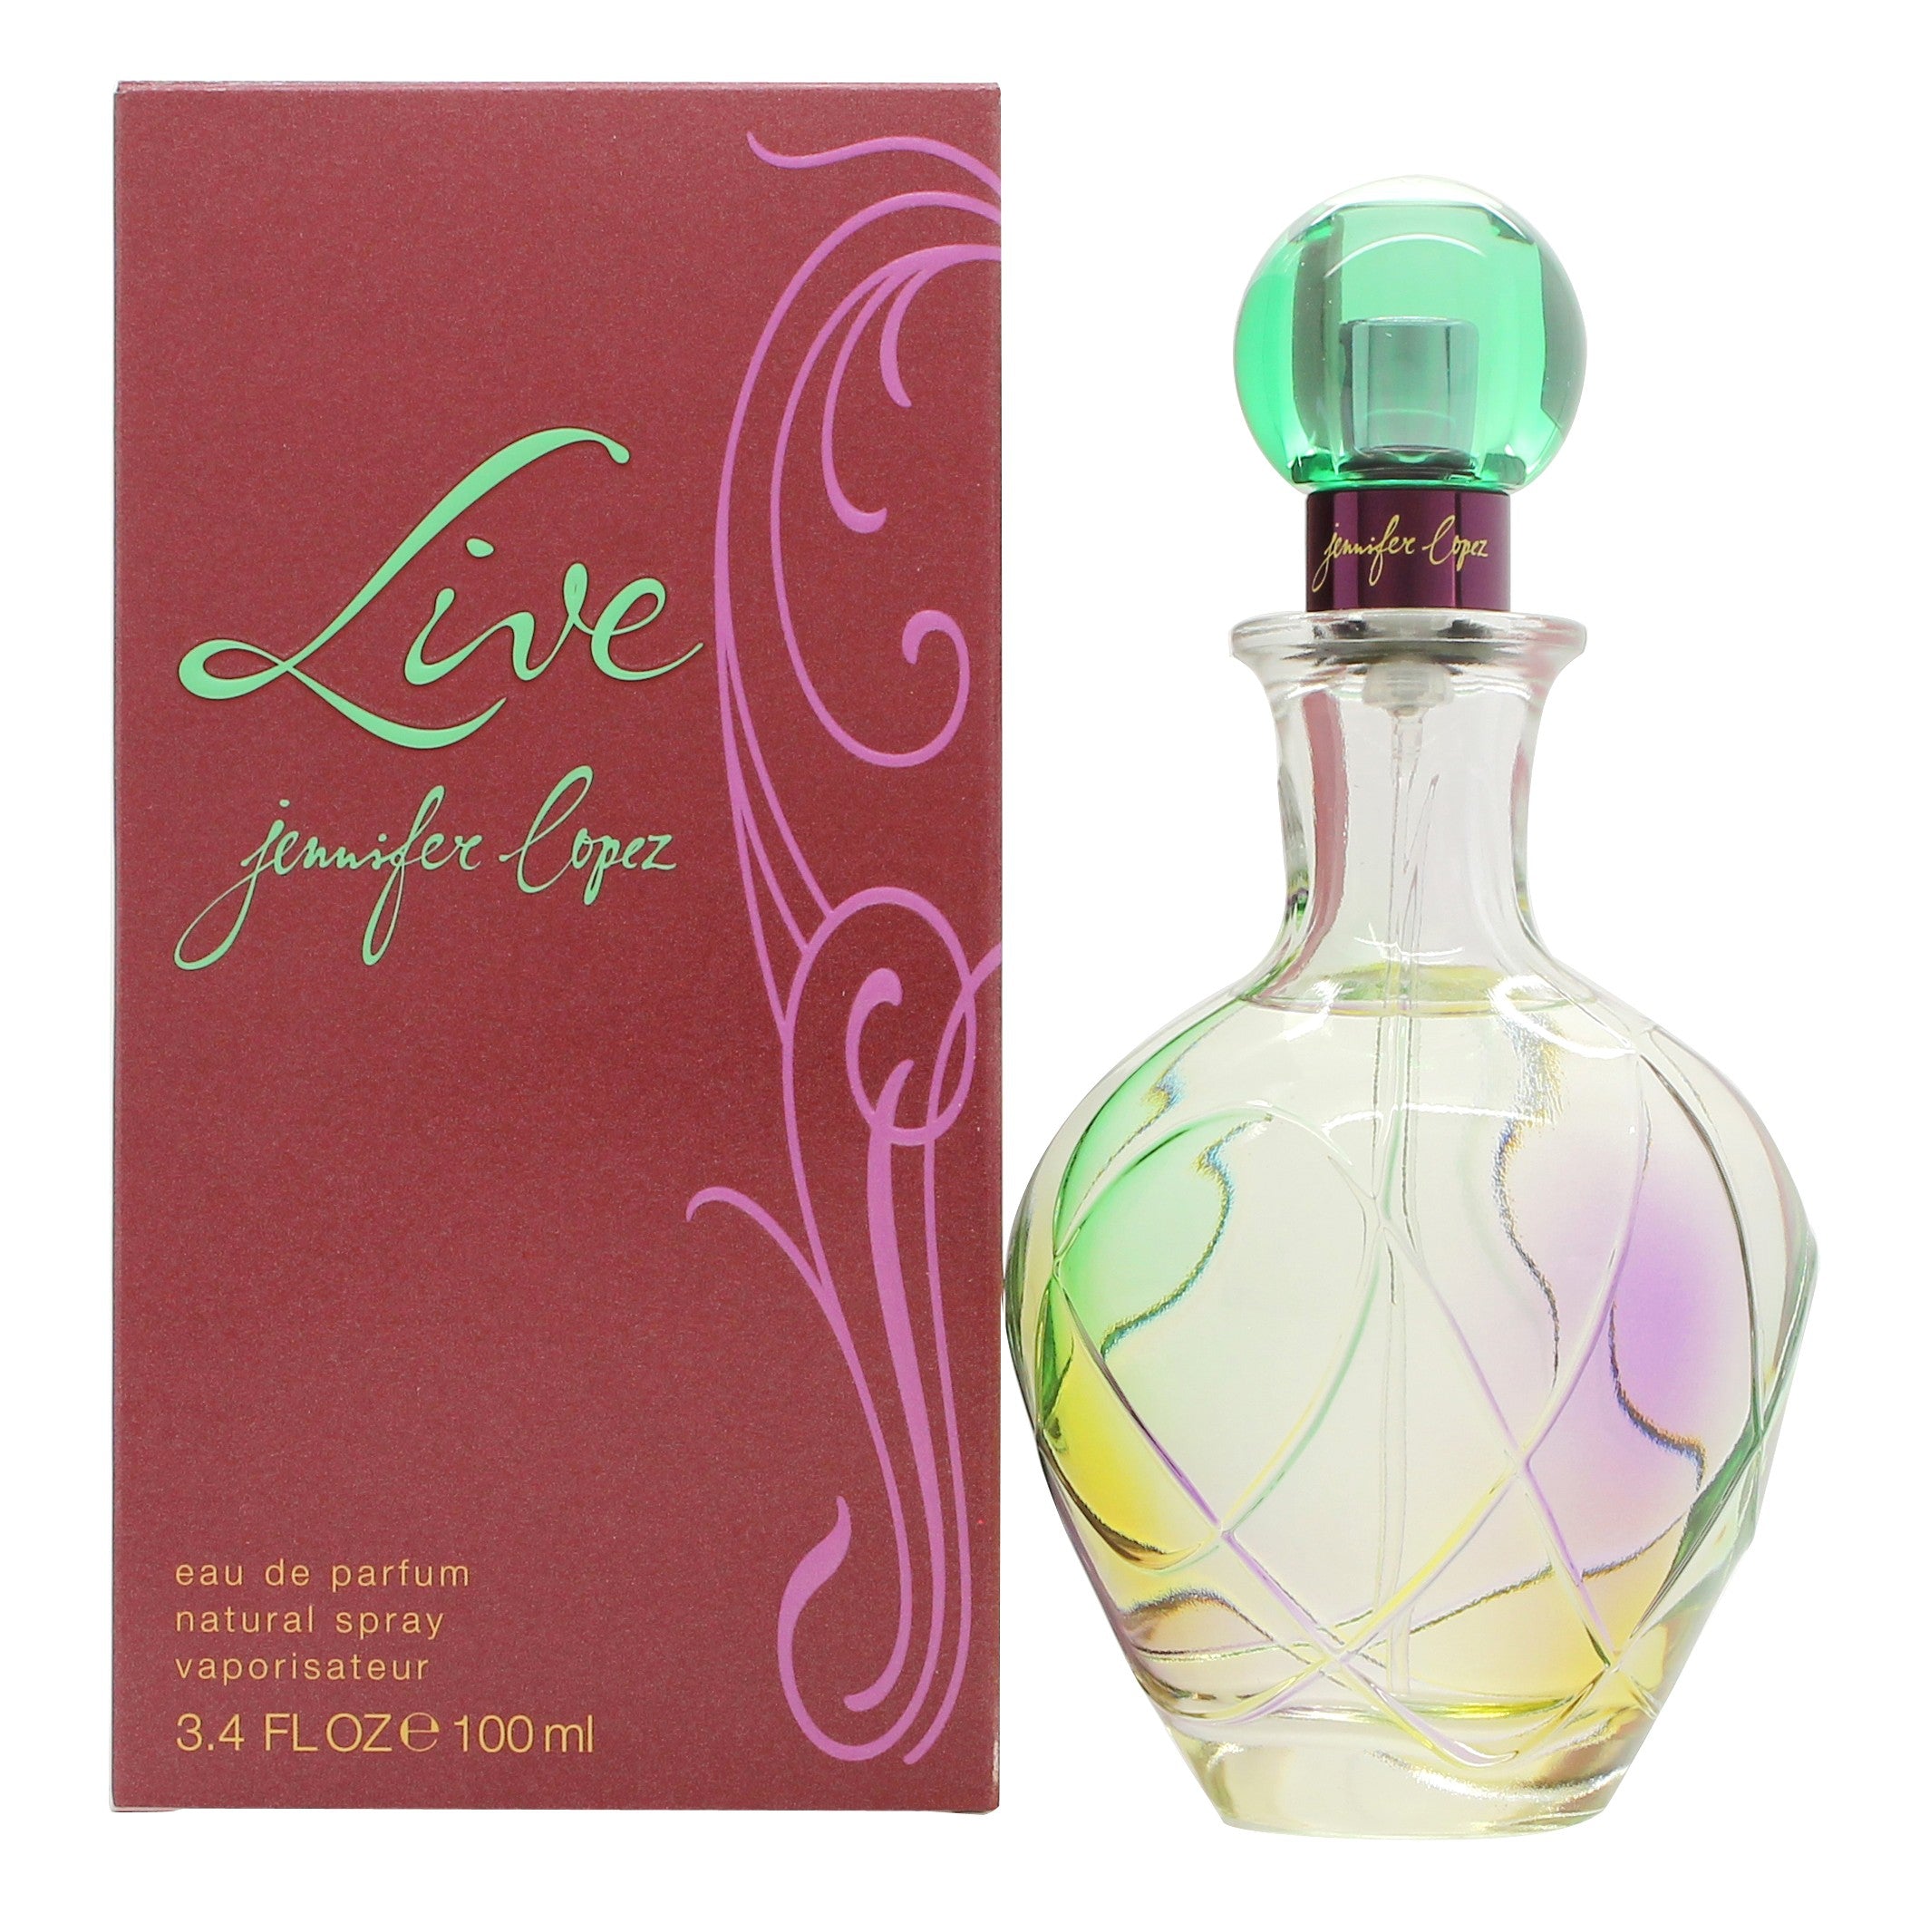 View Jennifer Lopez Live Eau de Parfum 100ml Spray information